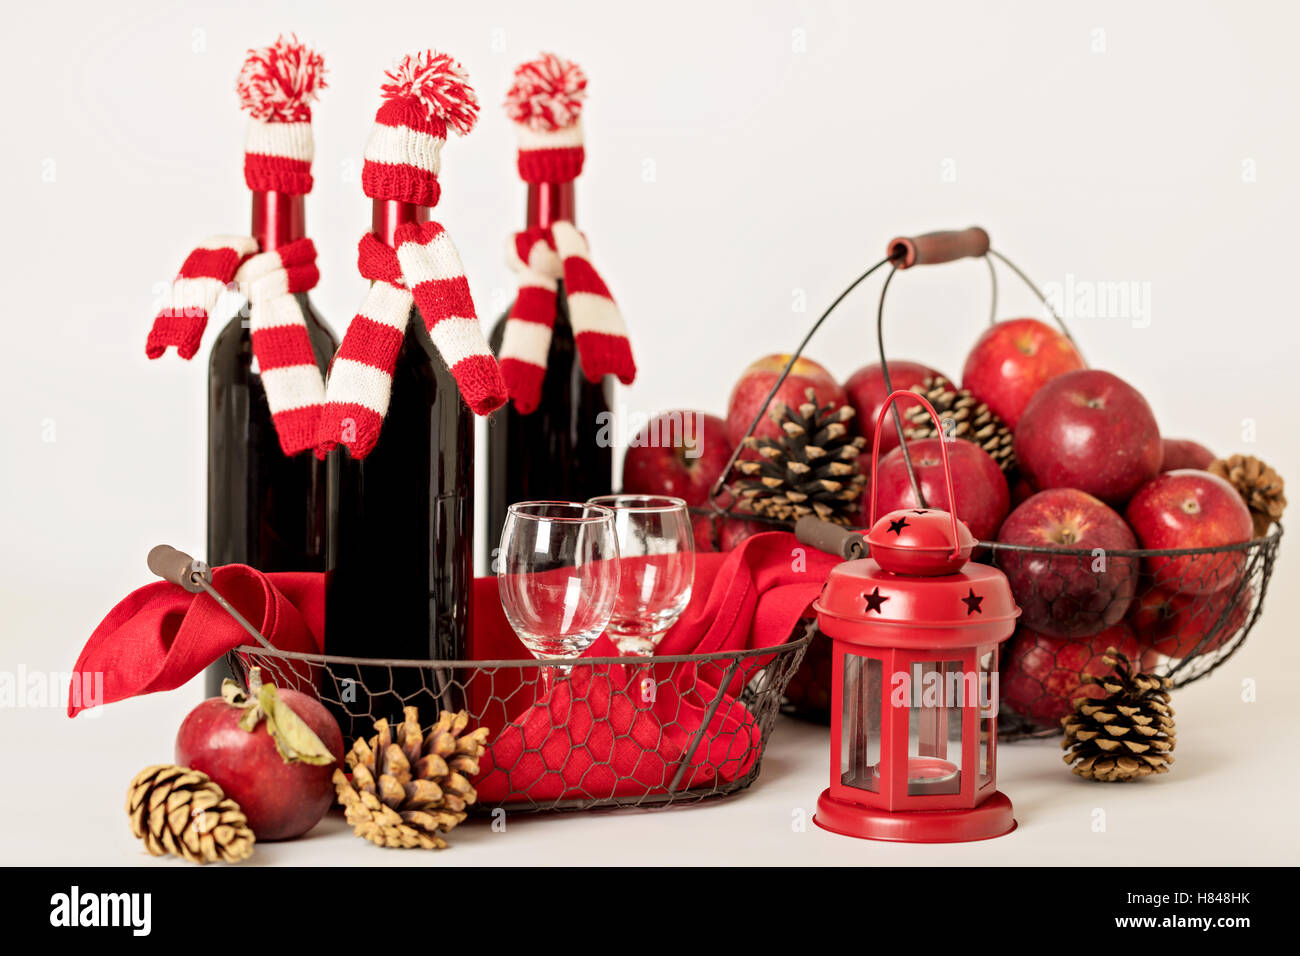 Joyeux Noël et bonne année. Des bouteilles de vin dans un tricot de Santa chapeaux, lunettes et panier de pommes. Banque D'Images